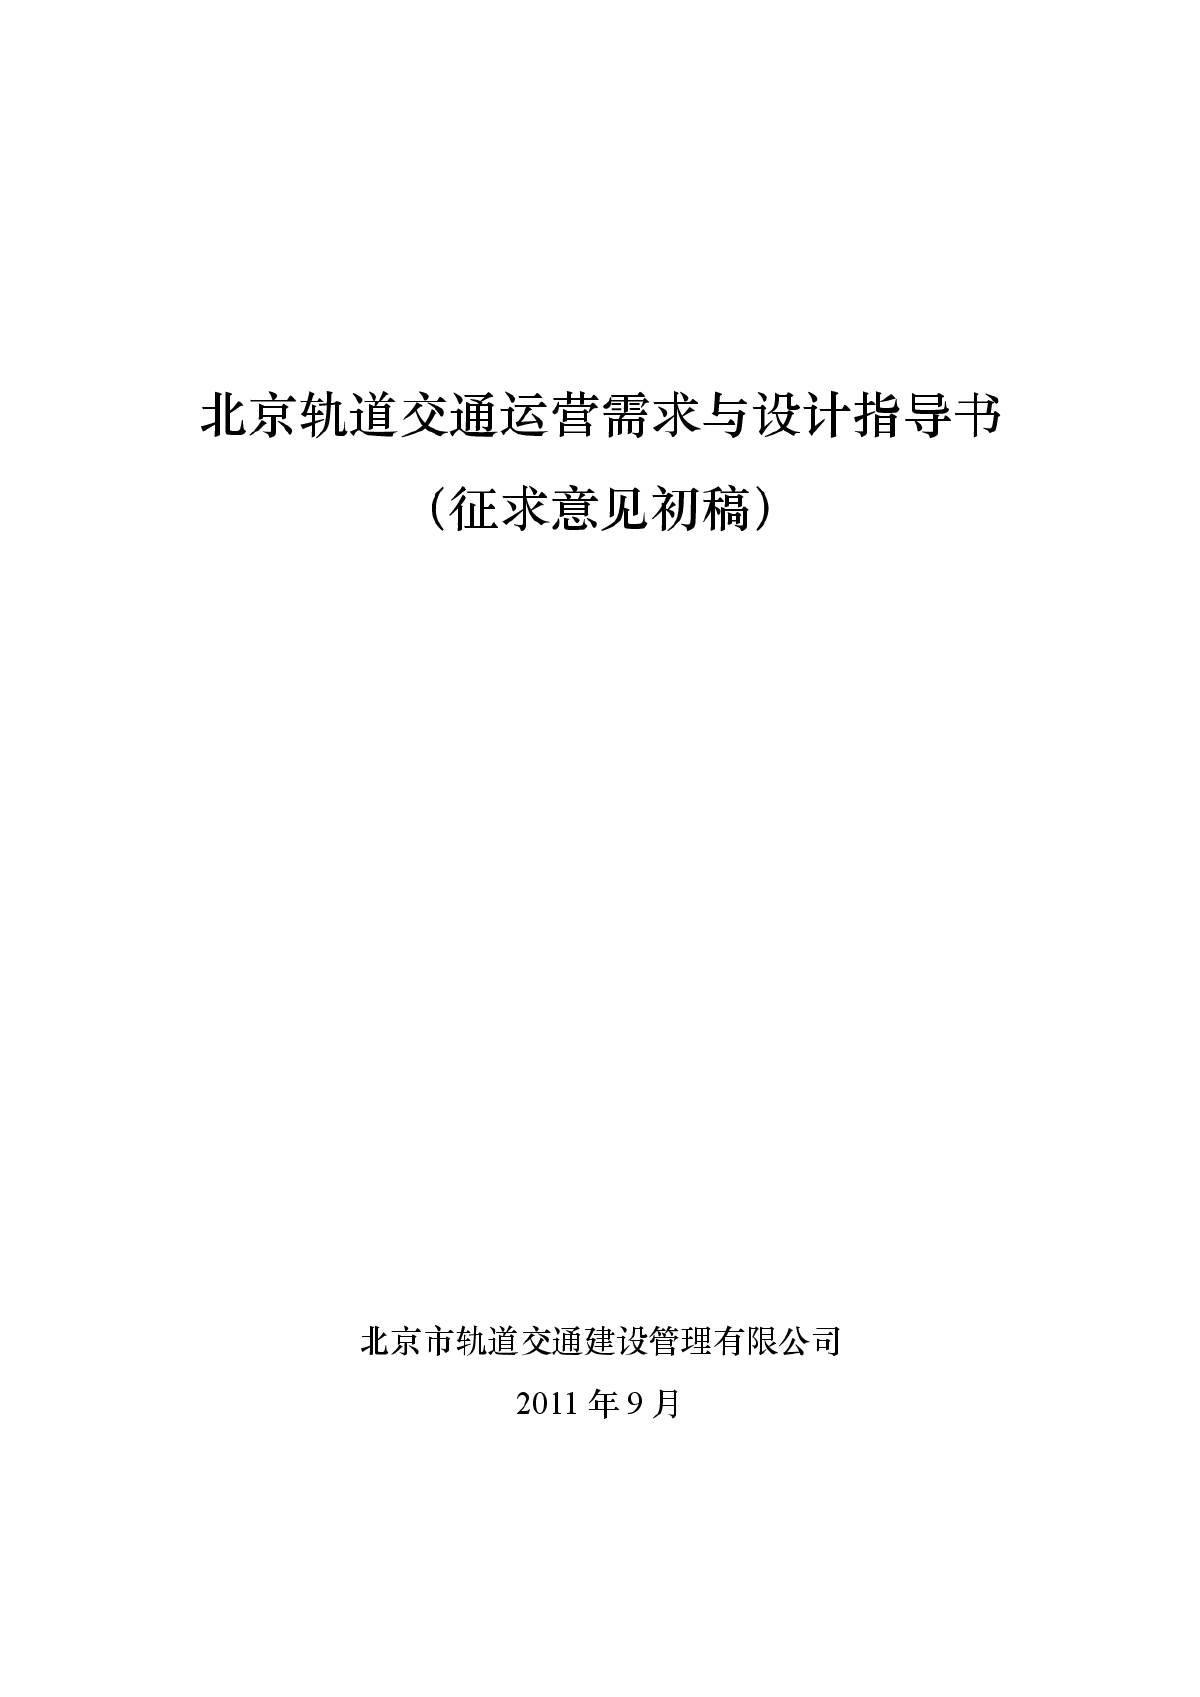 北京轨道交通设计指导书（初稿）